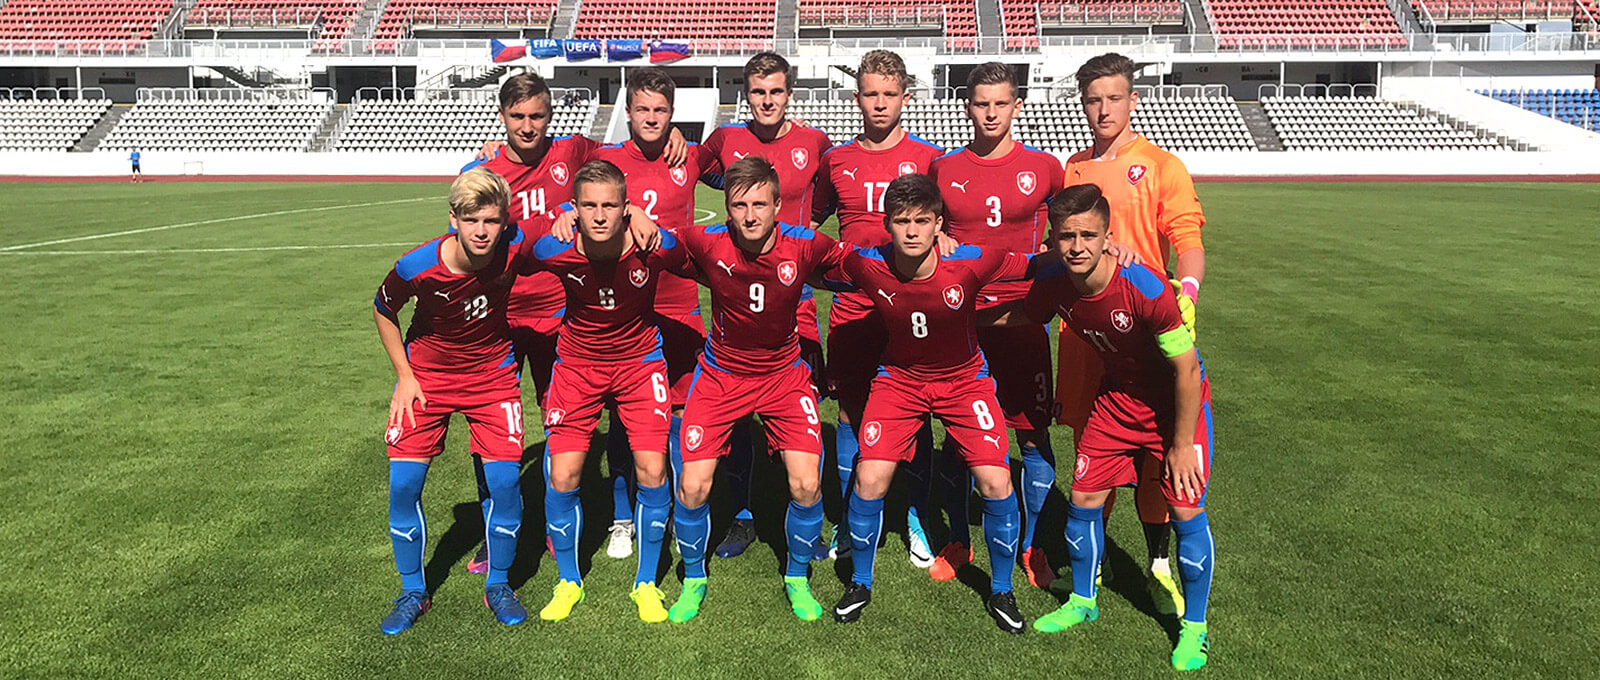 U-18 Czech National Team | 2017 SBS International Cup